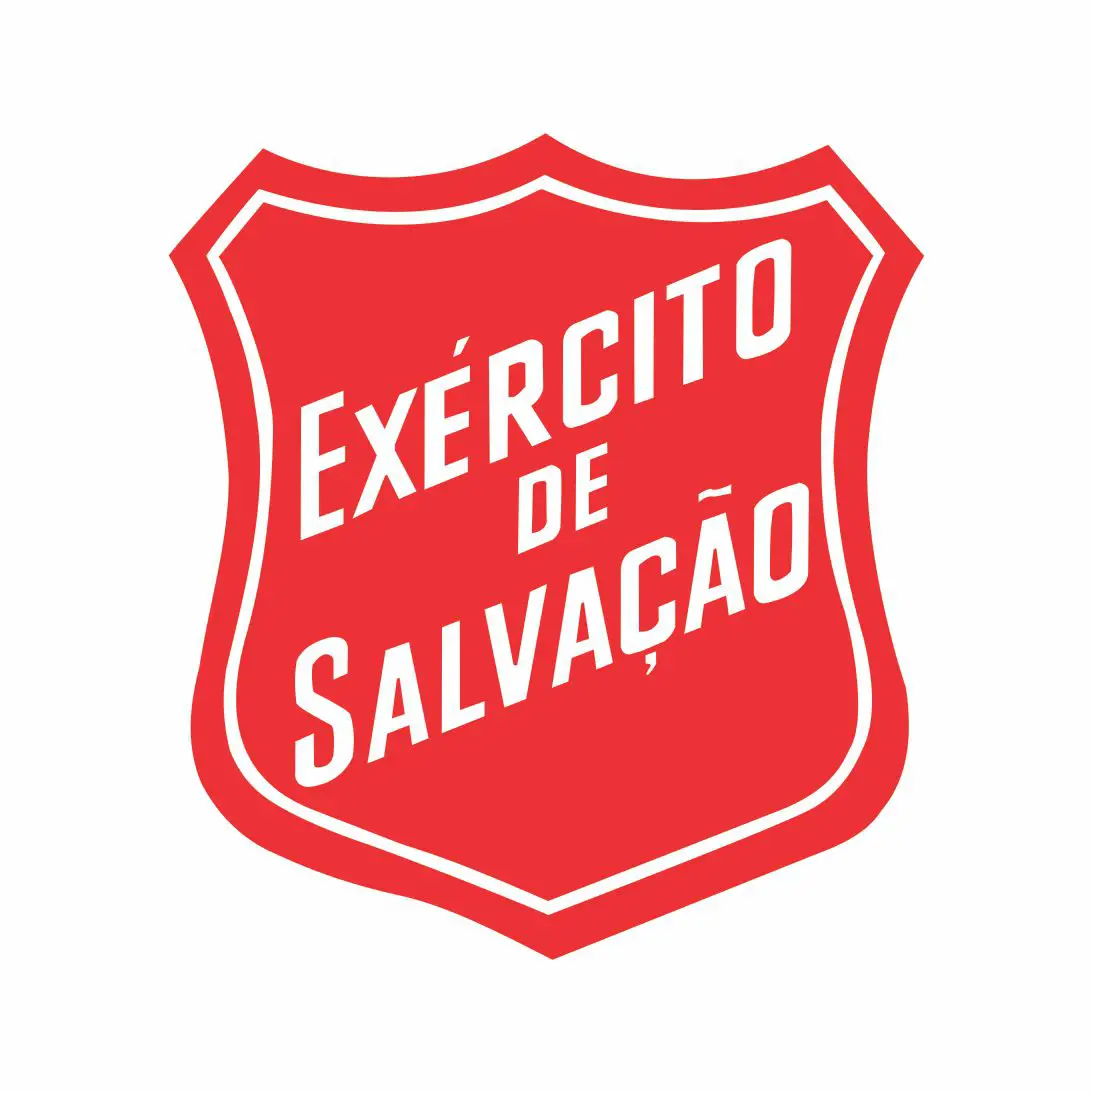 exercito_salvacao_logo_cartaxi